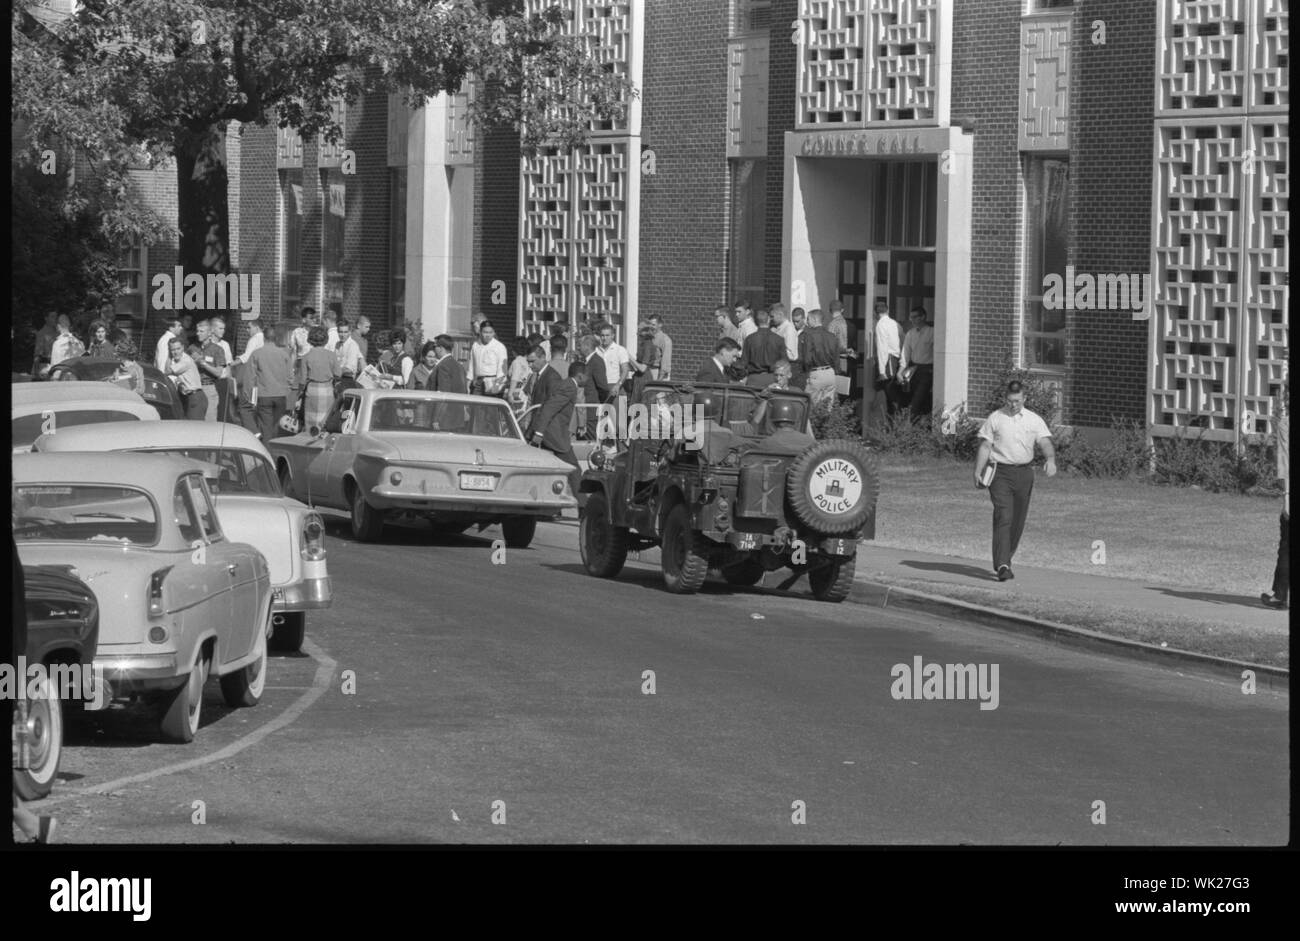 Integrazione a Ole Mississippi University; fotografia mostra gli studenti e i soldati in un veicolo militare al di fuori degli edifici presso la University of Mississippi, Oxford. Foto Stock